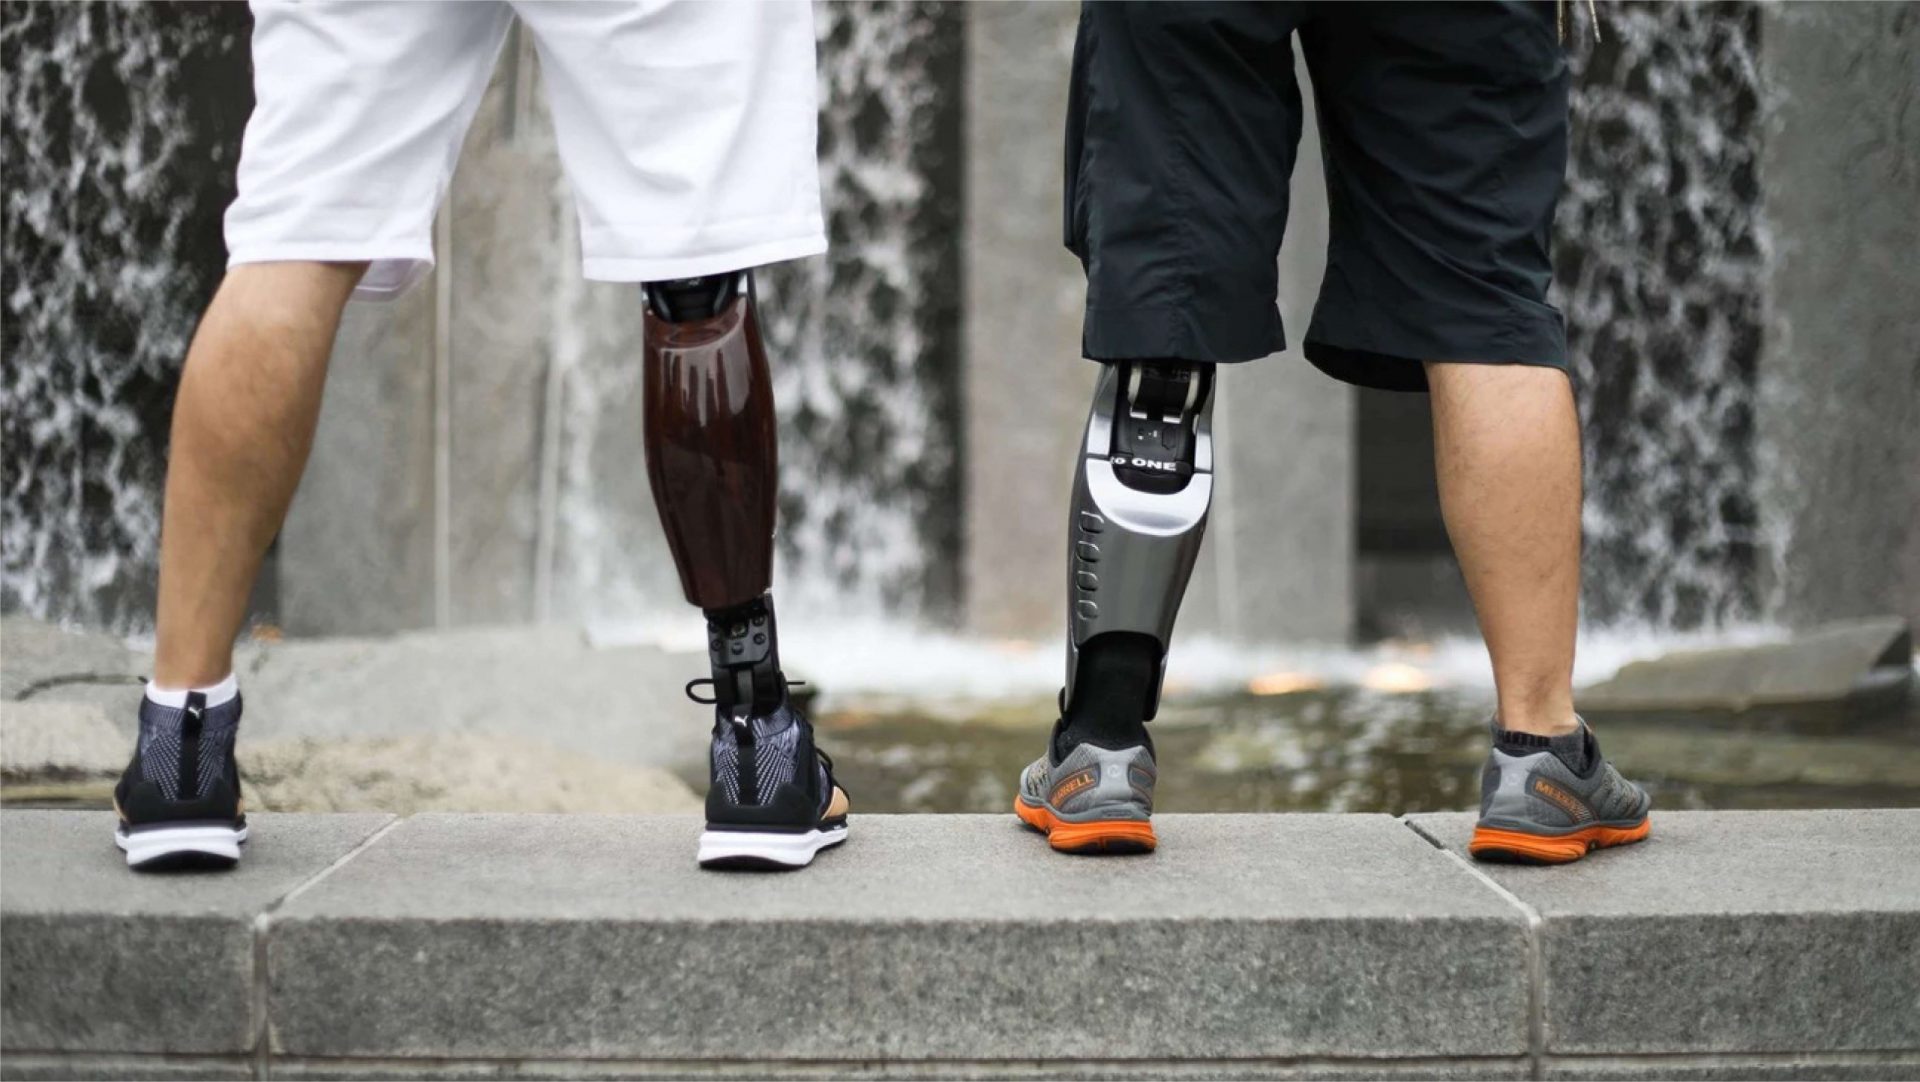 Designer prosthetic legs